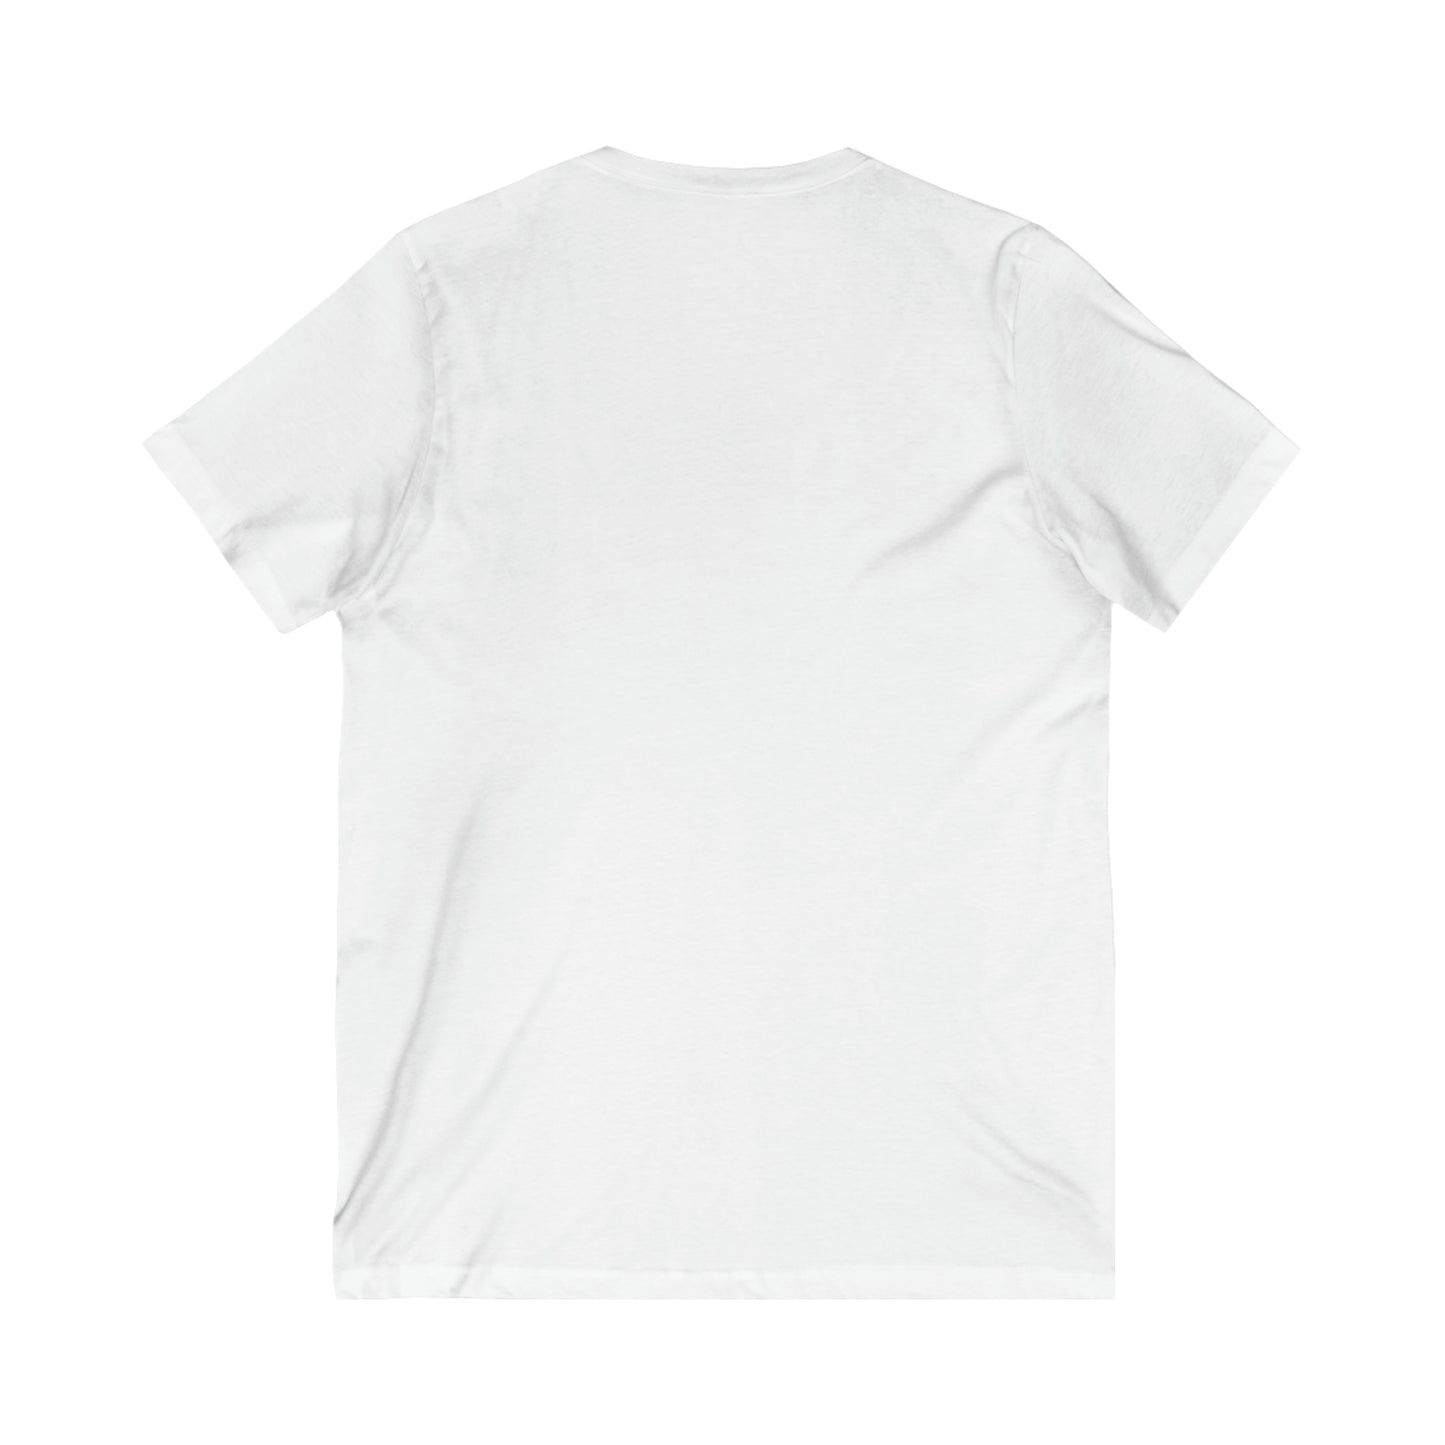 Boutique - Fulton St & Brooklyn Tech Pl - Men's V-Neck T-Shirt